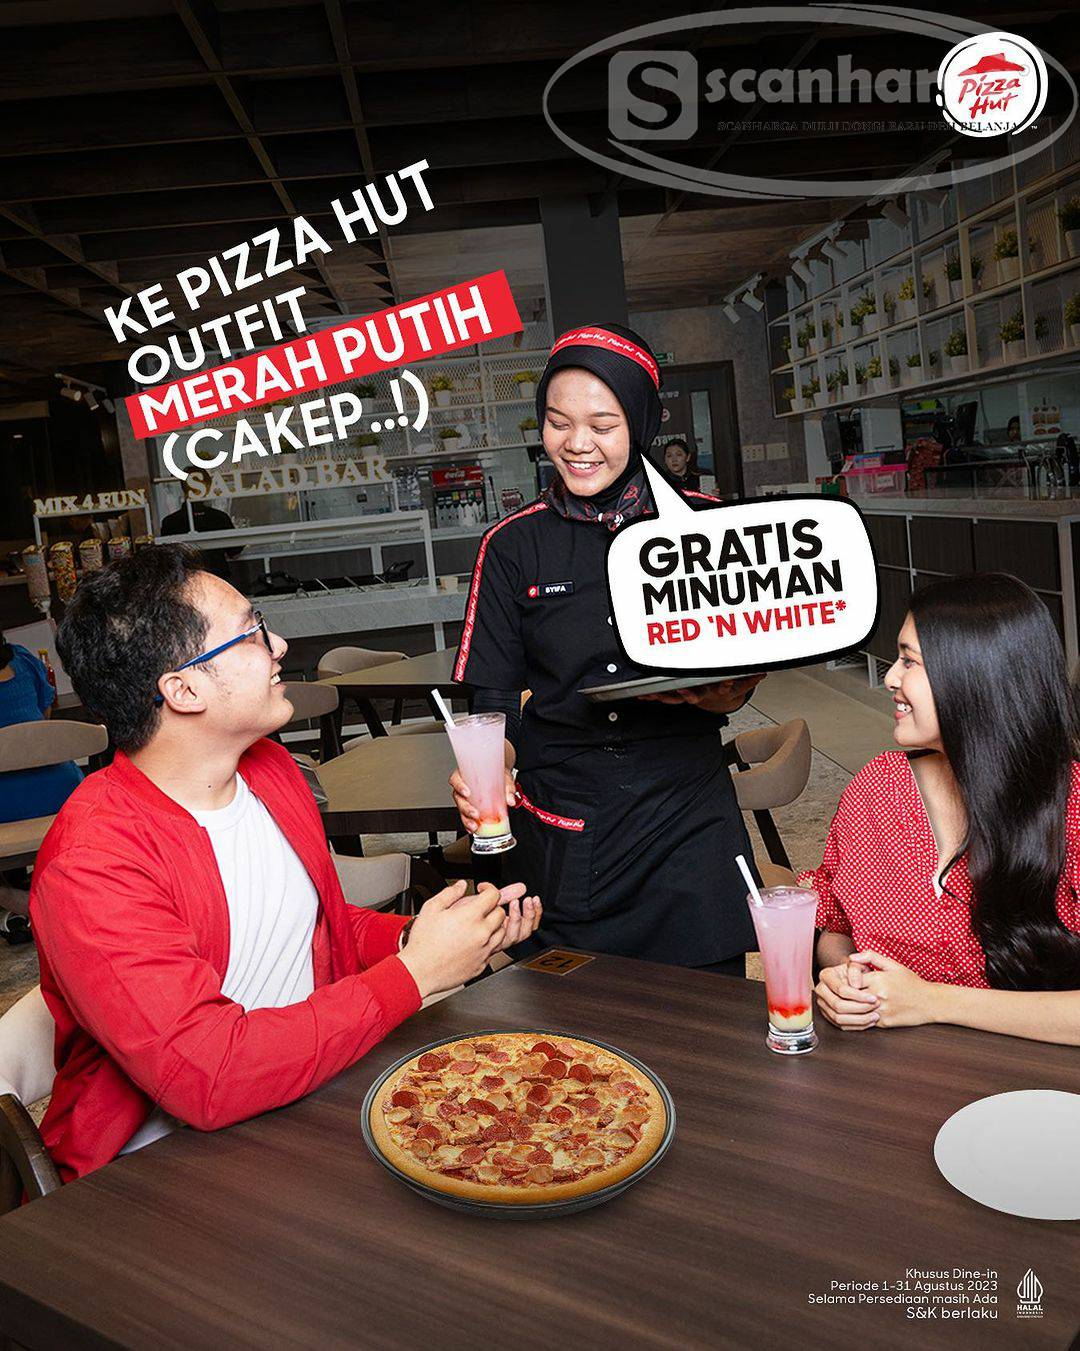 Promo PIZZA HUT GRATIS MINUMAN RED ‘N WHITE Pakai OUTFIT MERAH PUTIH